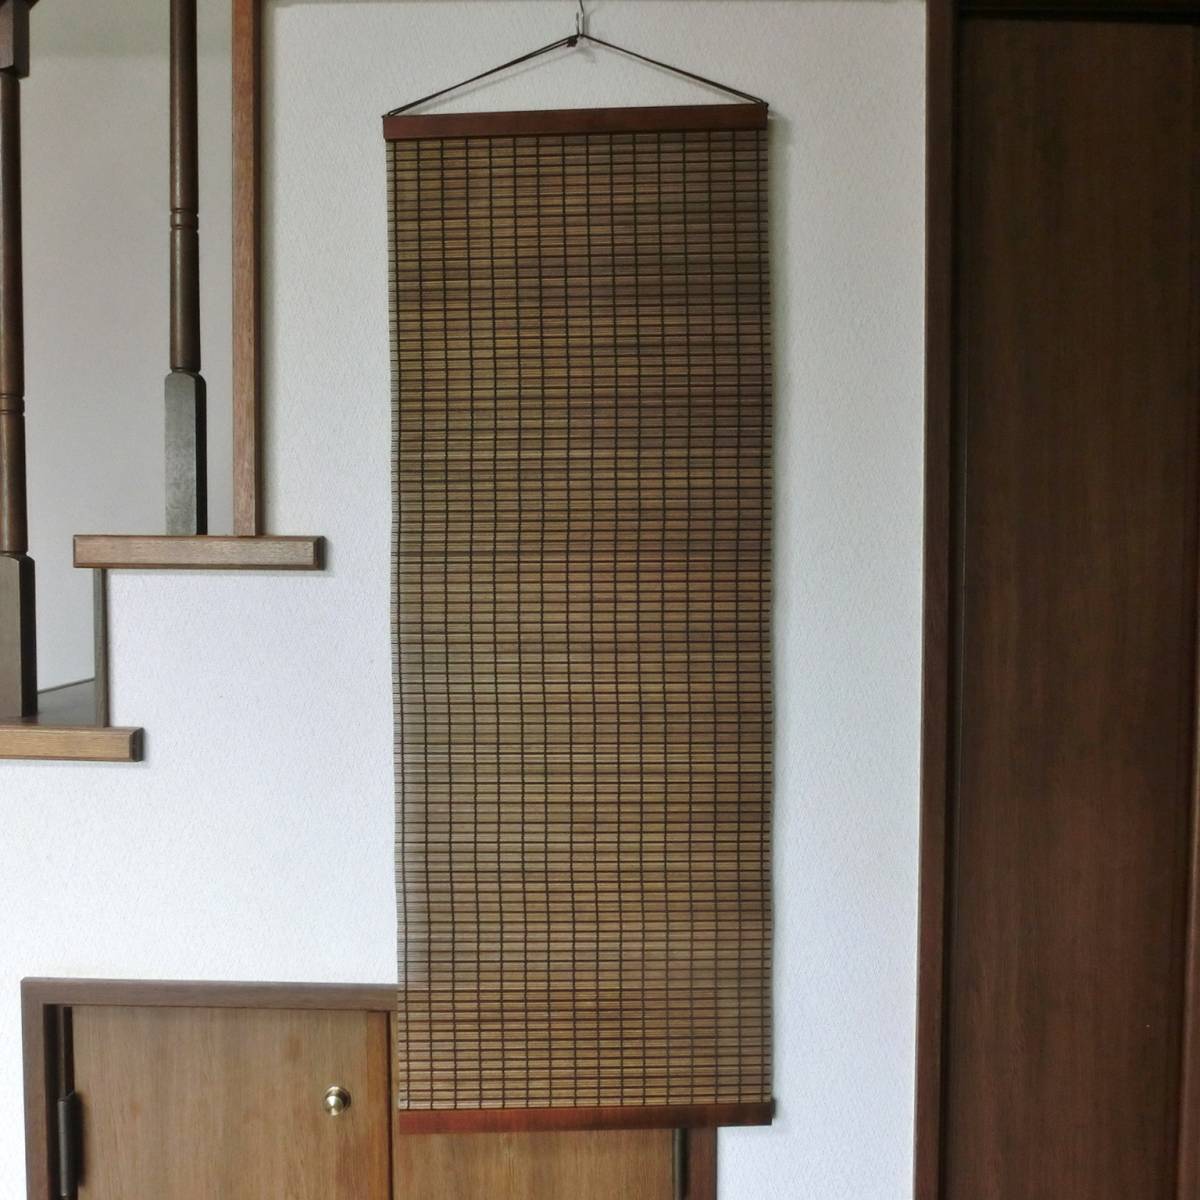 Tapiz de madera Elegante tapiz de madera de estilo japonés 1 Ancho 40 cm Largo 110 cm, trabajos hechos a mano, interior, bienes varios, panel, tapiz